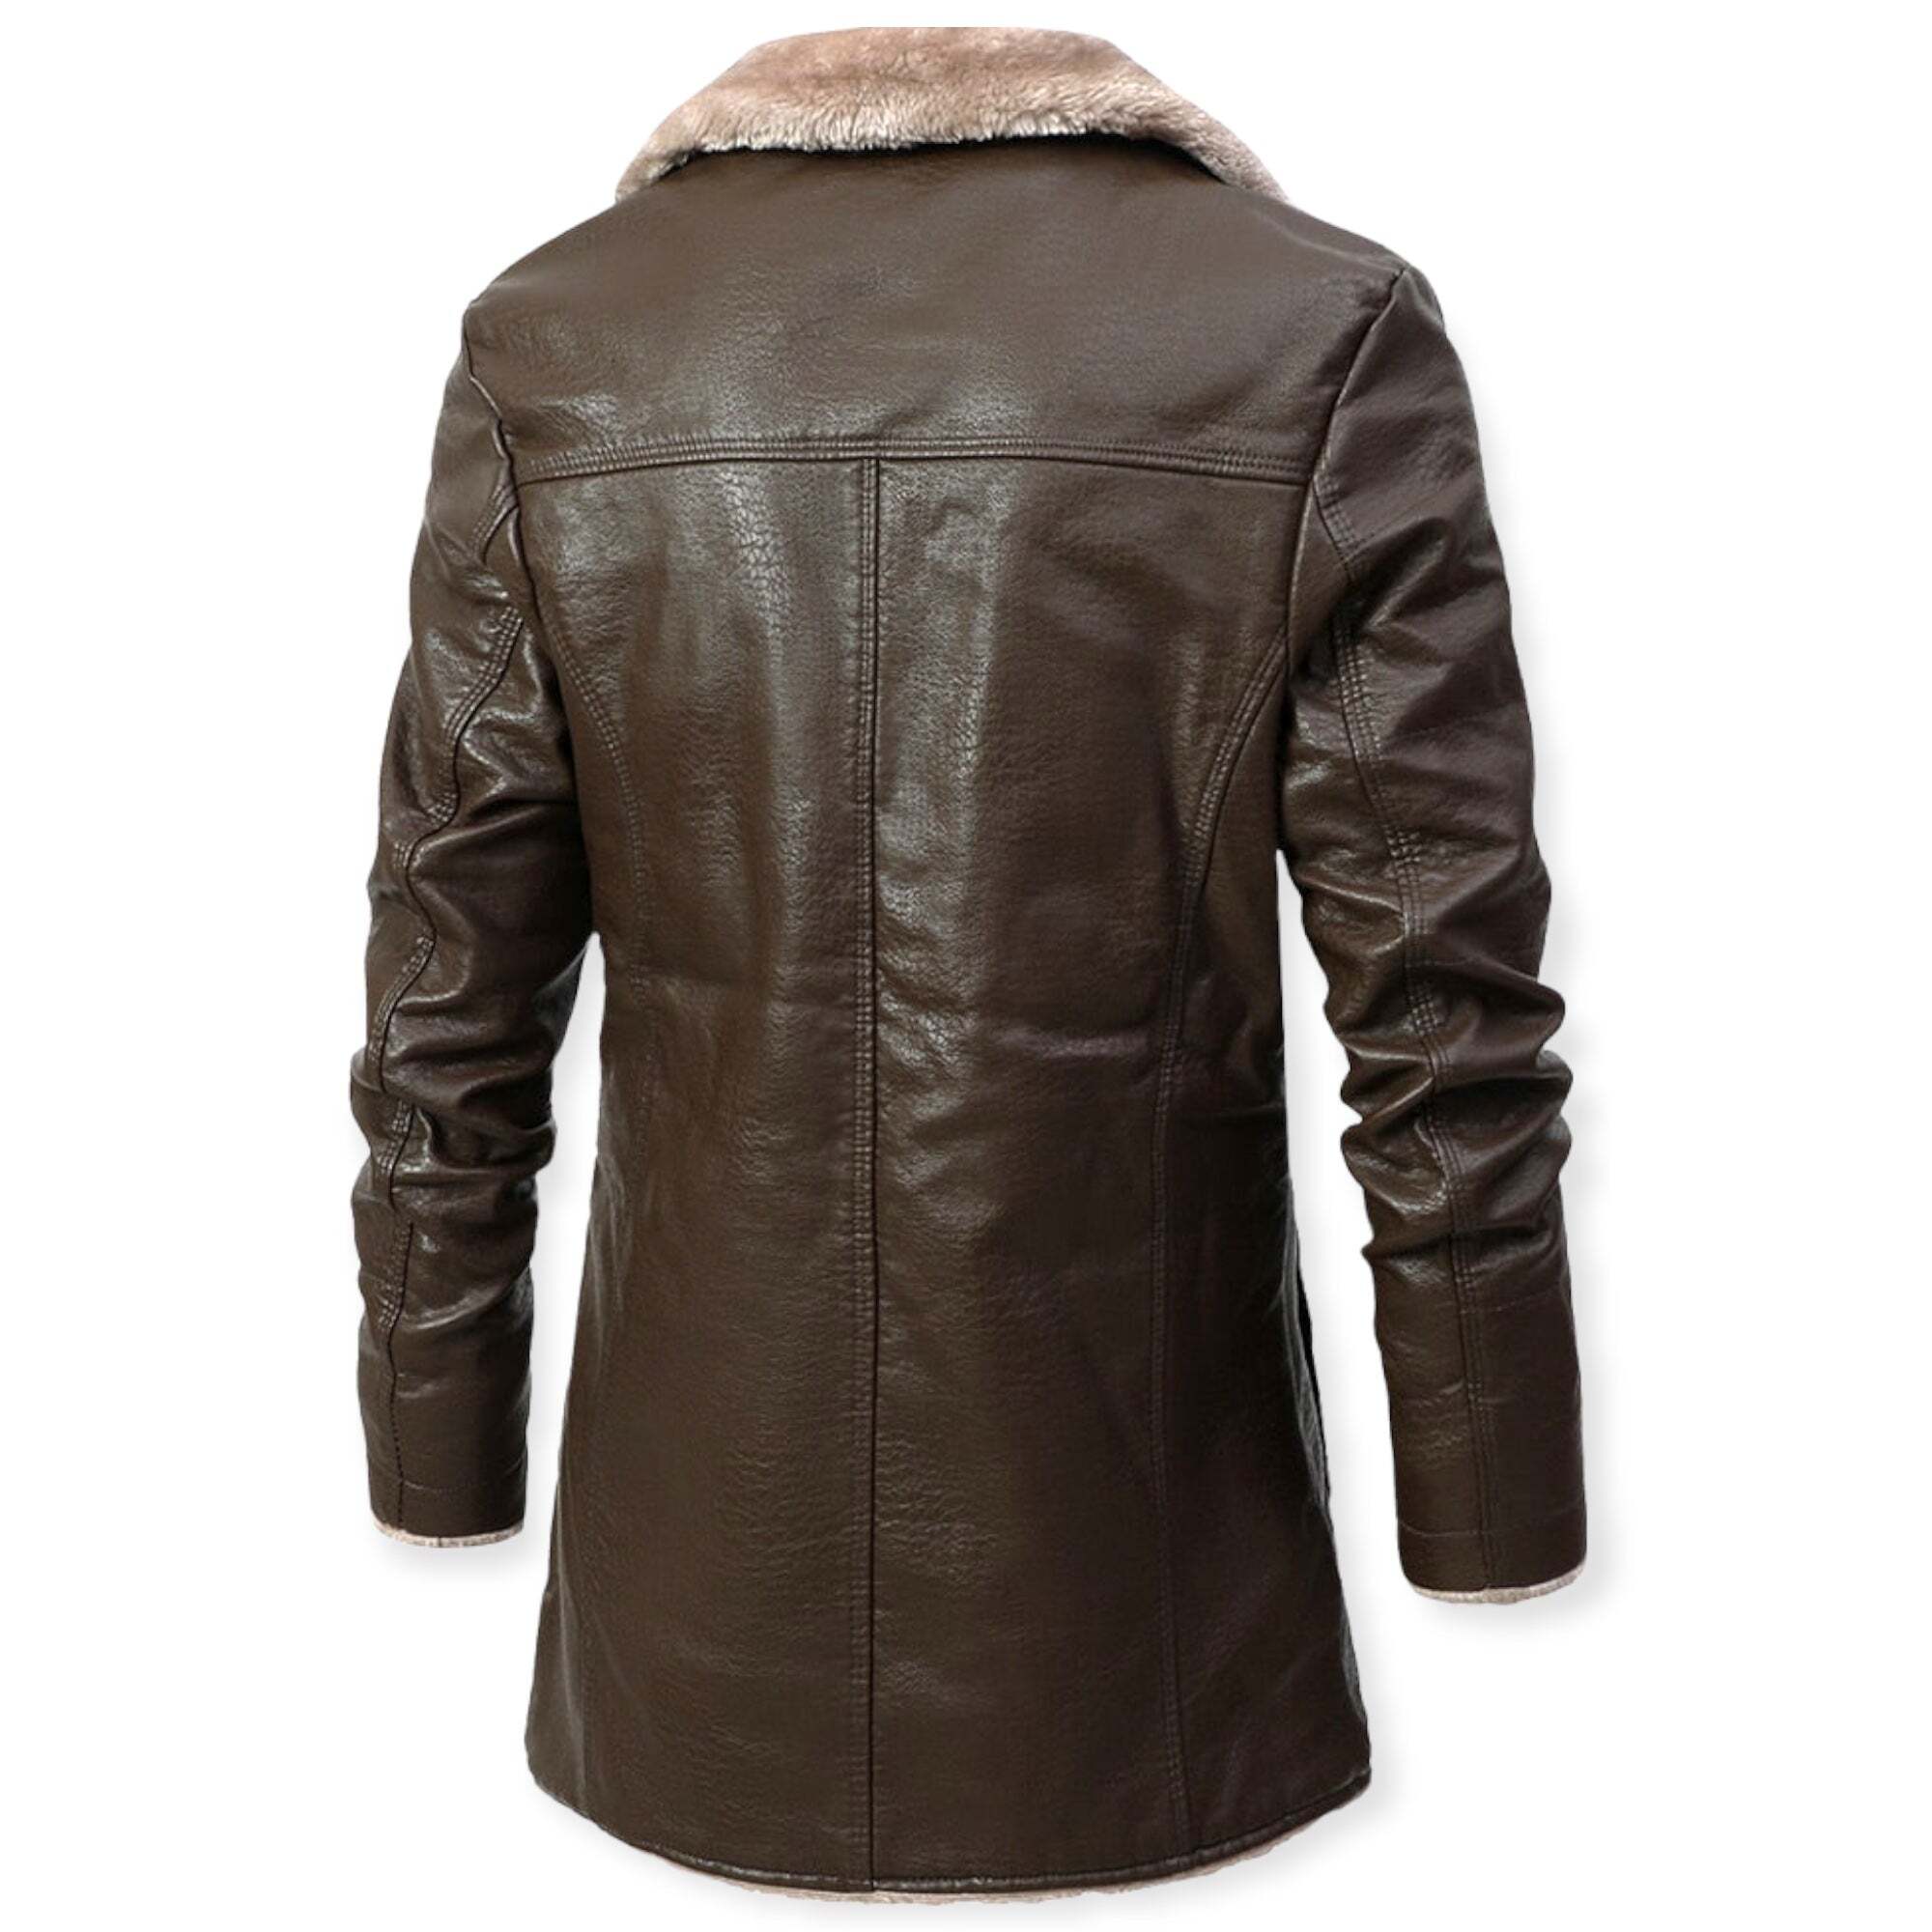 'Myth of Argos' Leather Jacket